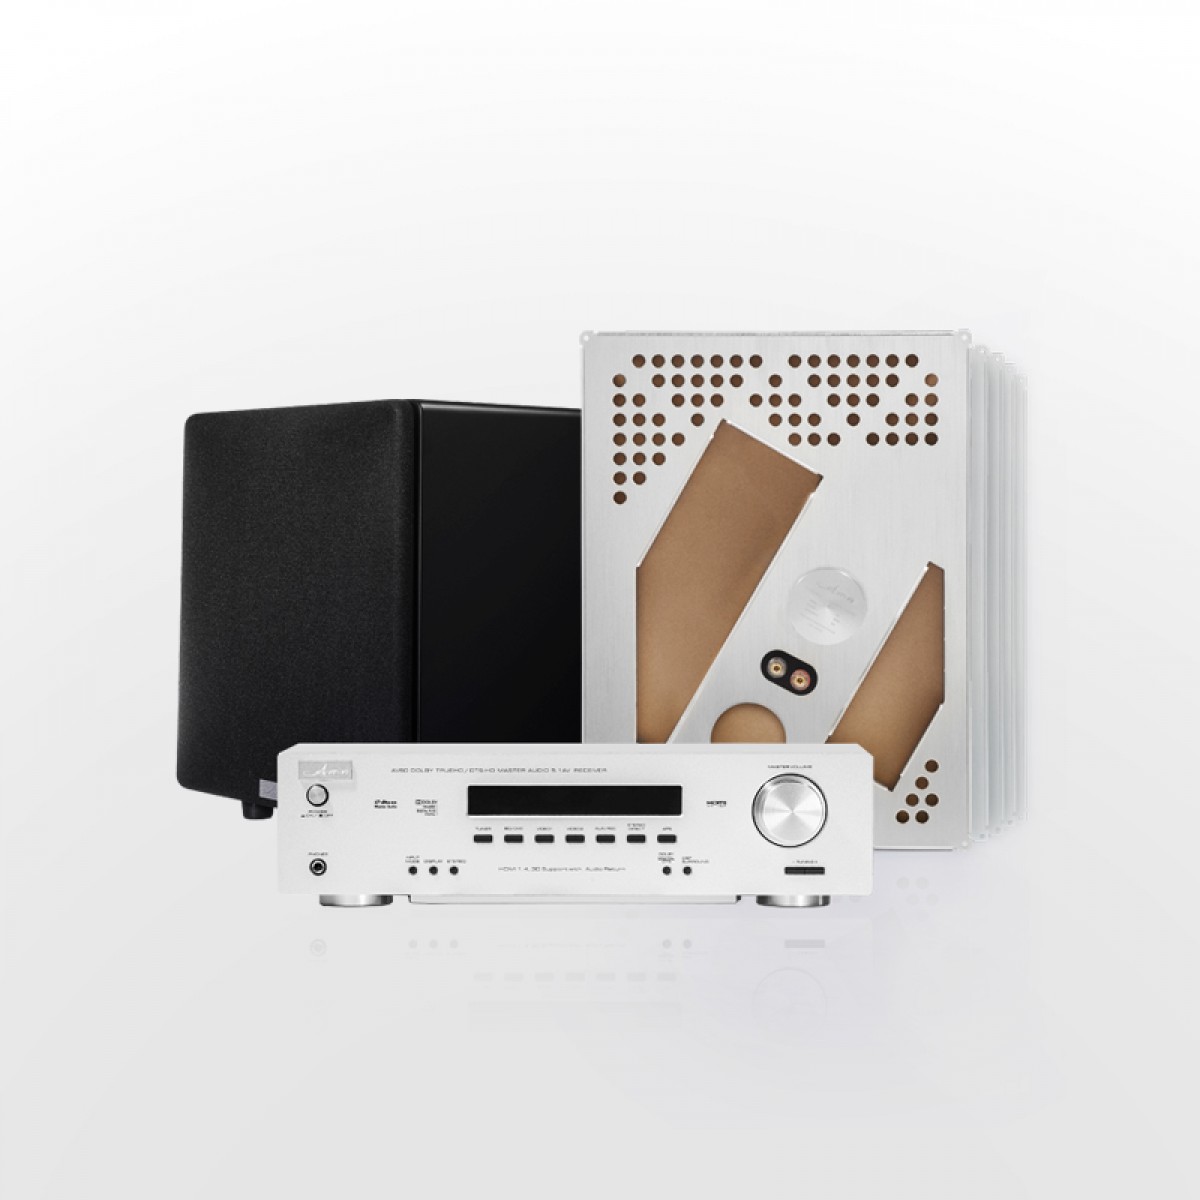 阿米纳 AMN 家庭影院套装5.1声道 隐形客厅影音系统